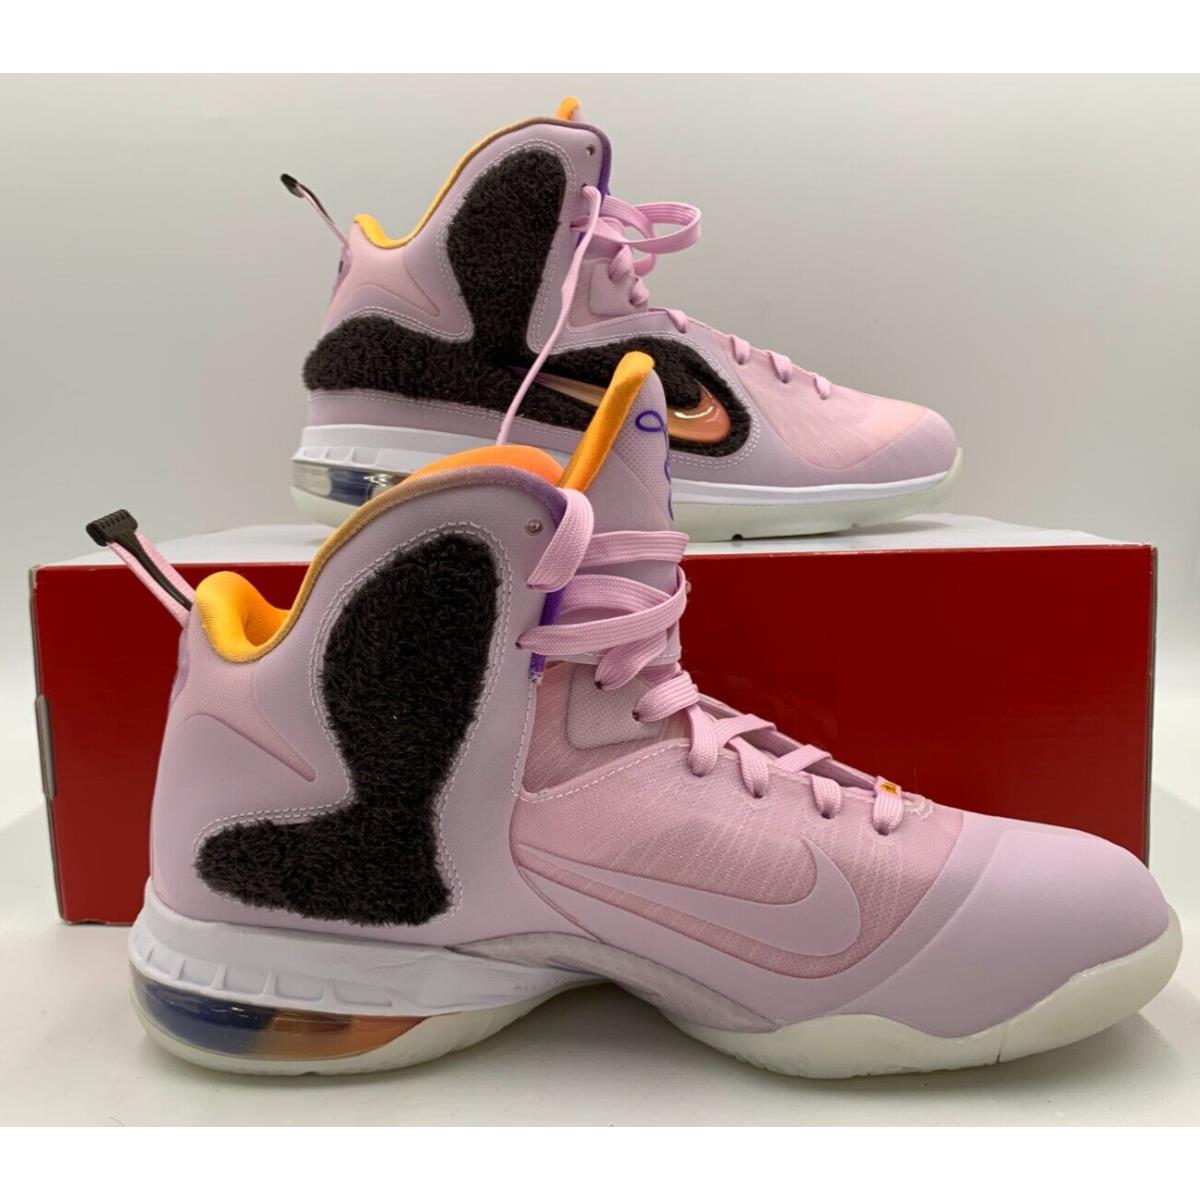 Nike Men`s Lebron IX Shoes Regal Pink Multicolor Size 7.5 DJ3908-600